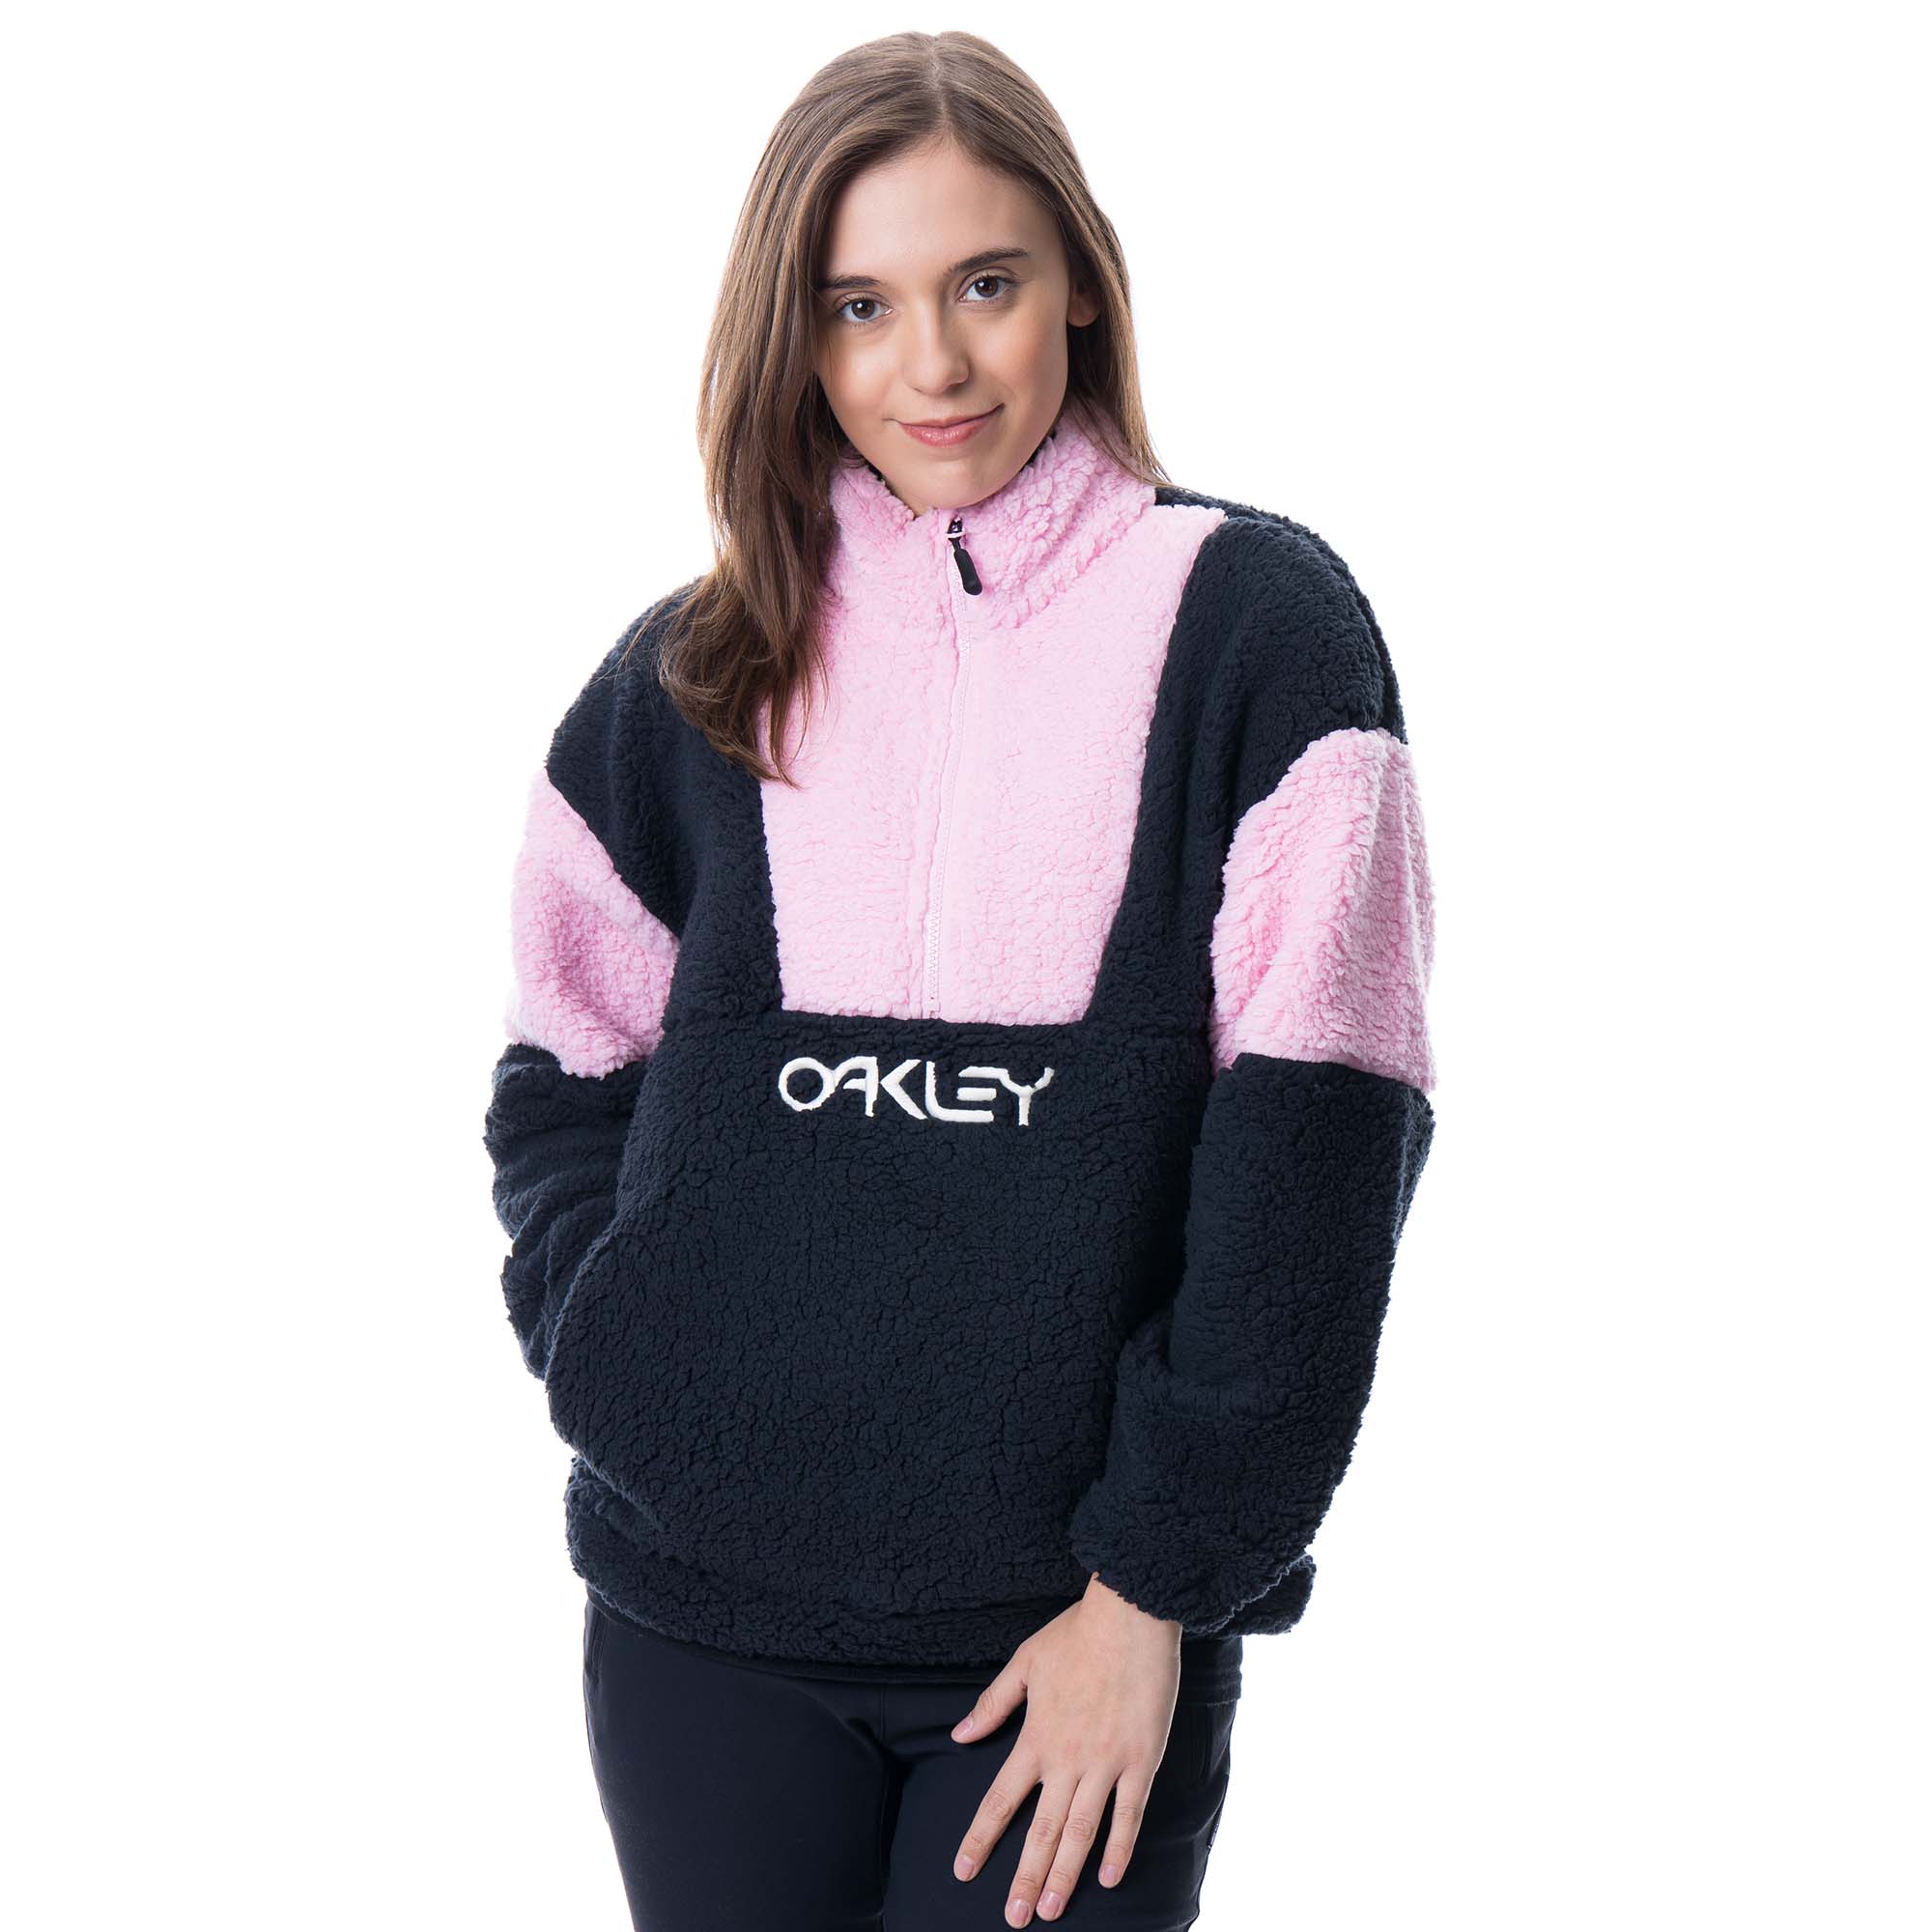 Oakley TNP Ember Women's Half Zip RC Fleece